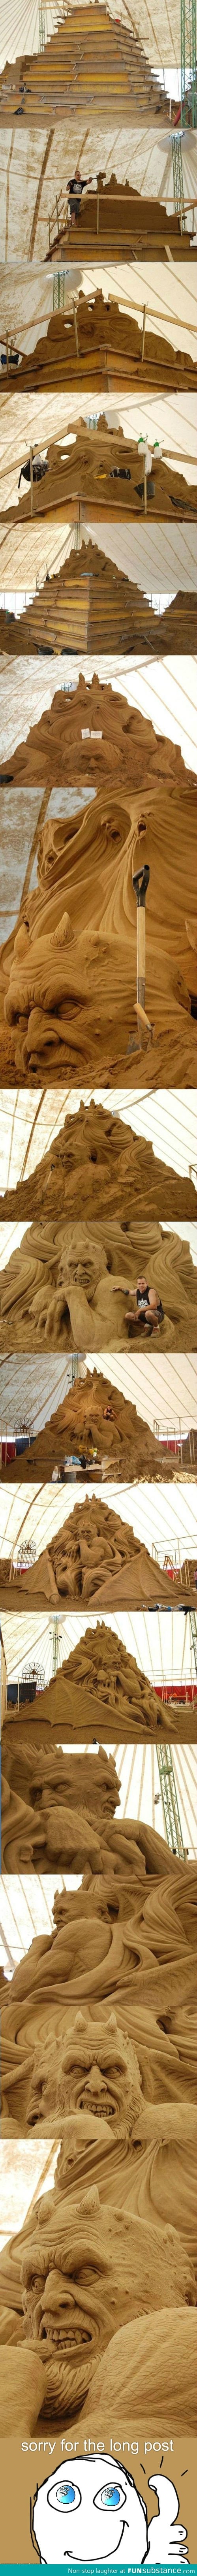 Epic Sand Sculpture